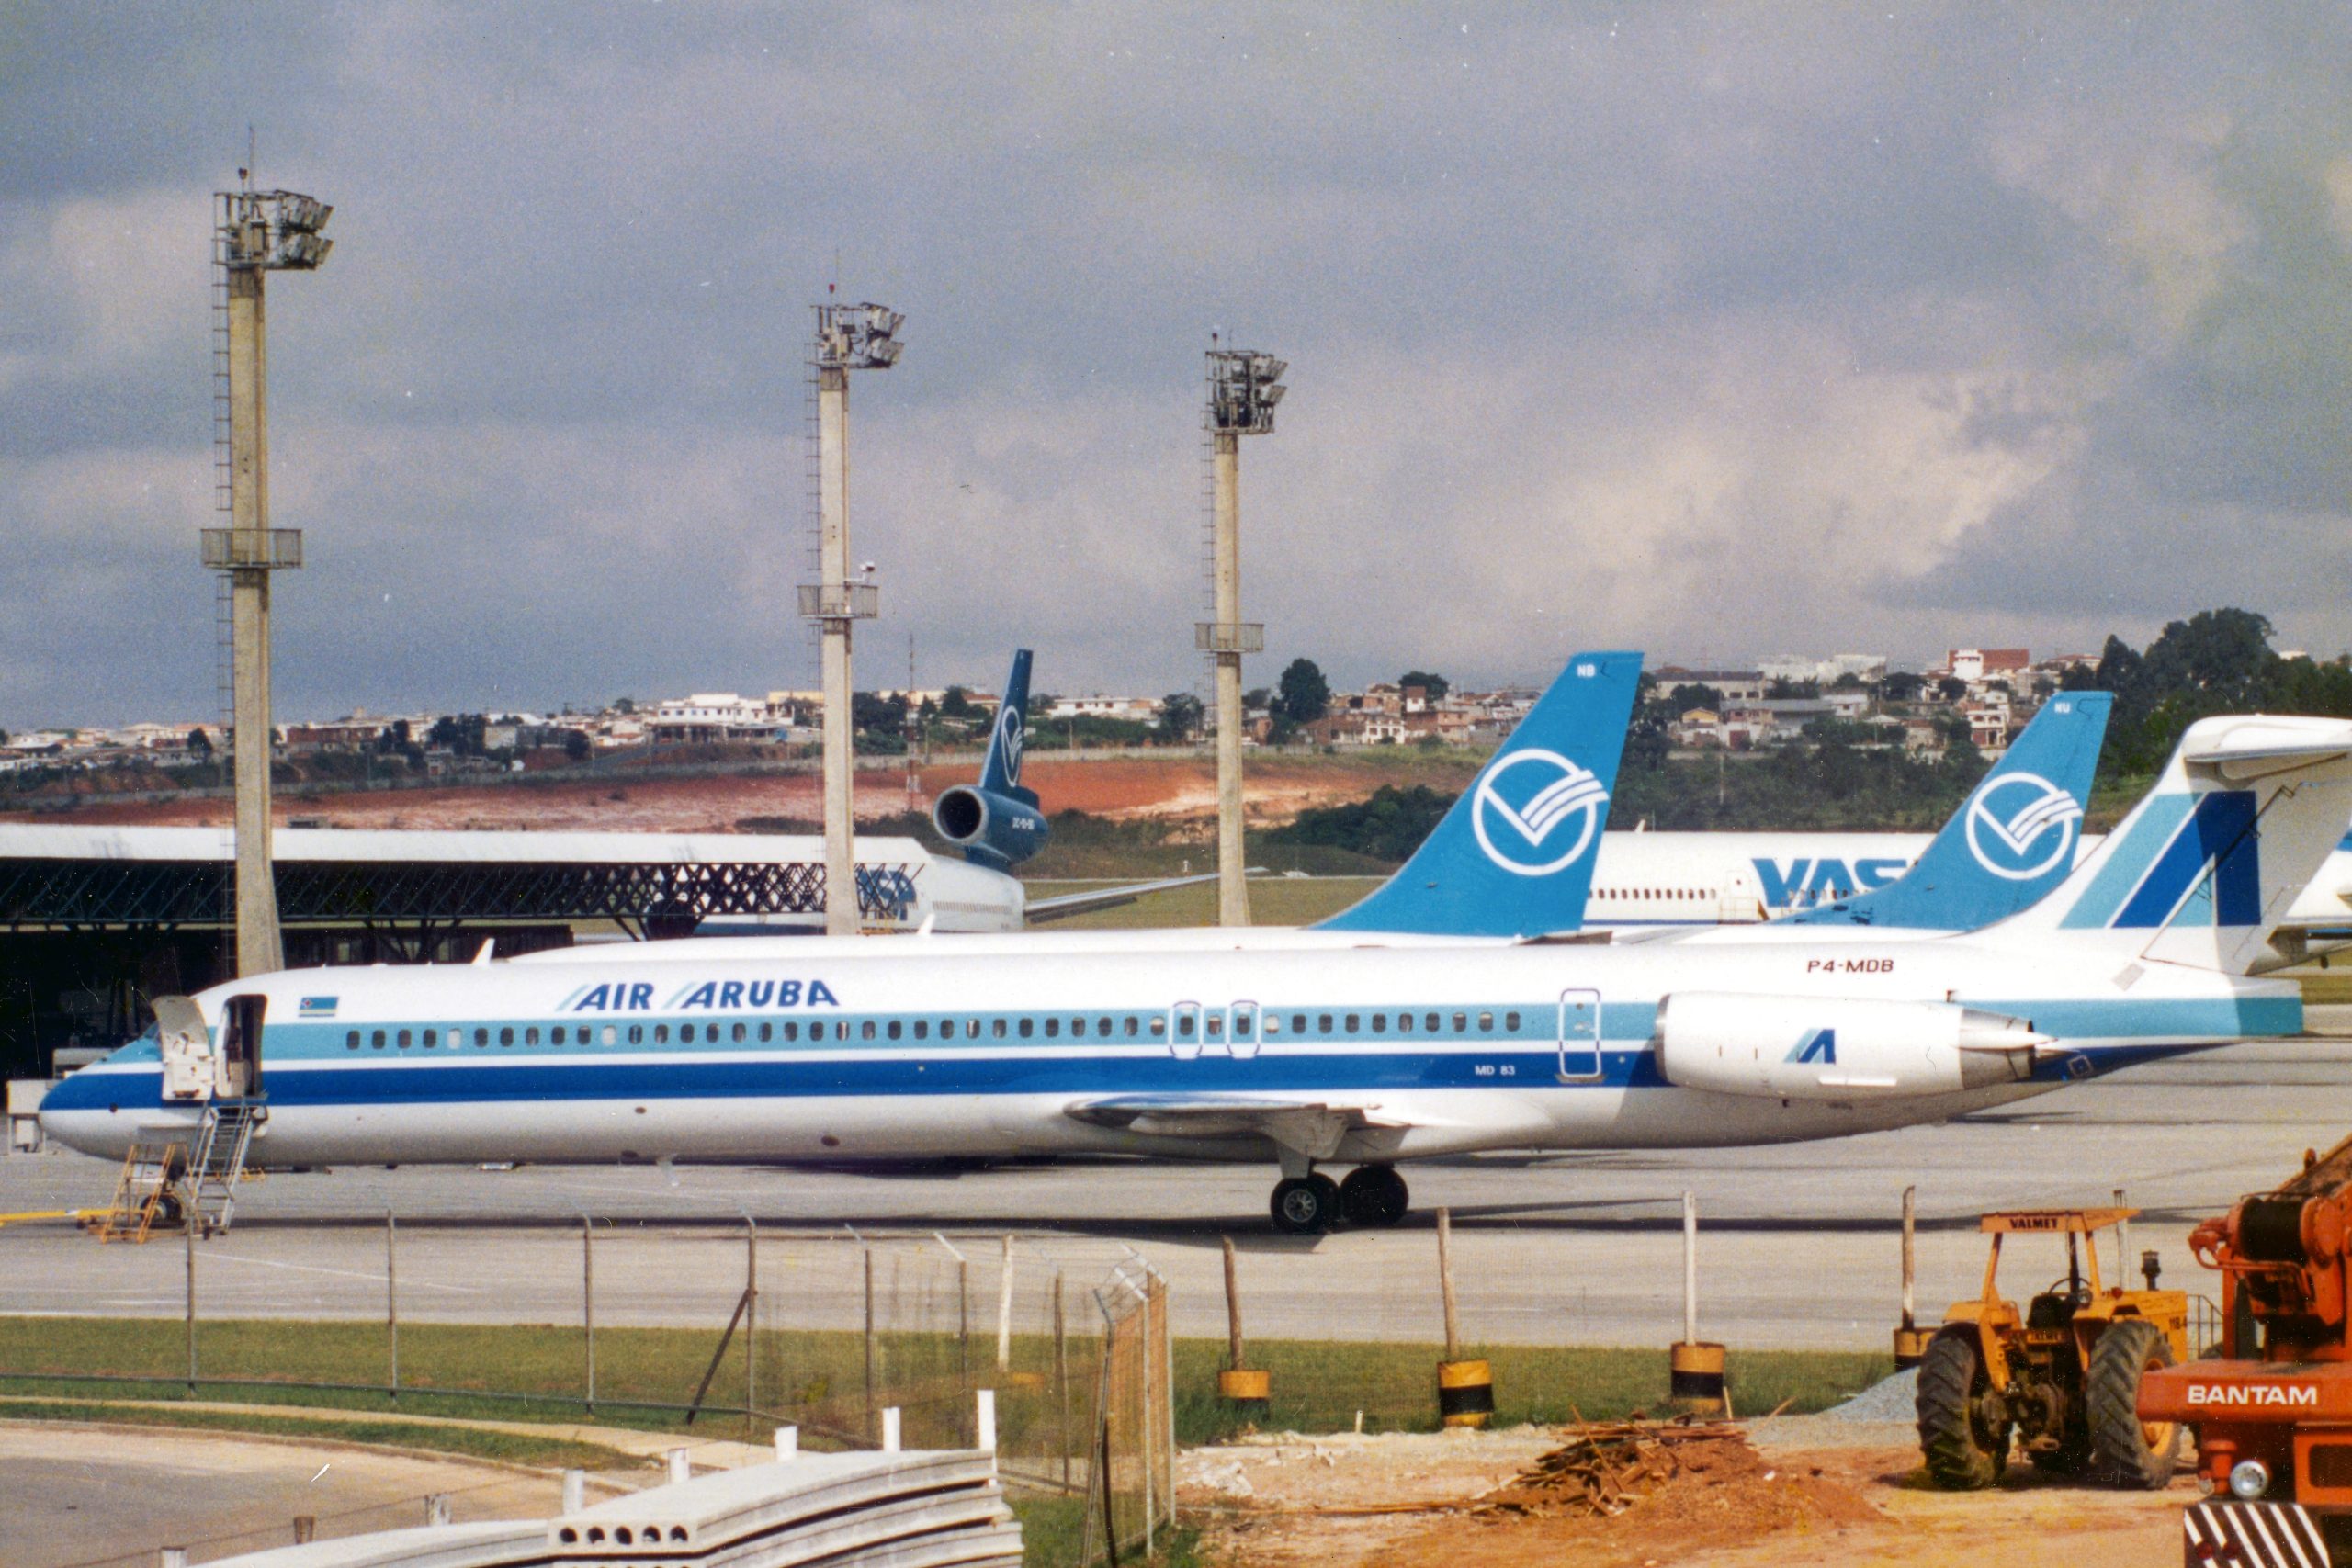 One Happy Airline: as operações da Air Aruba no Brasil